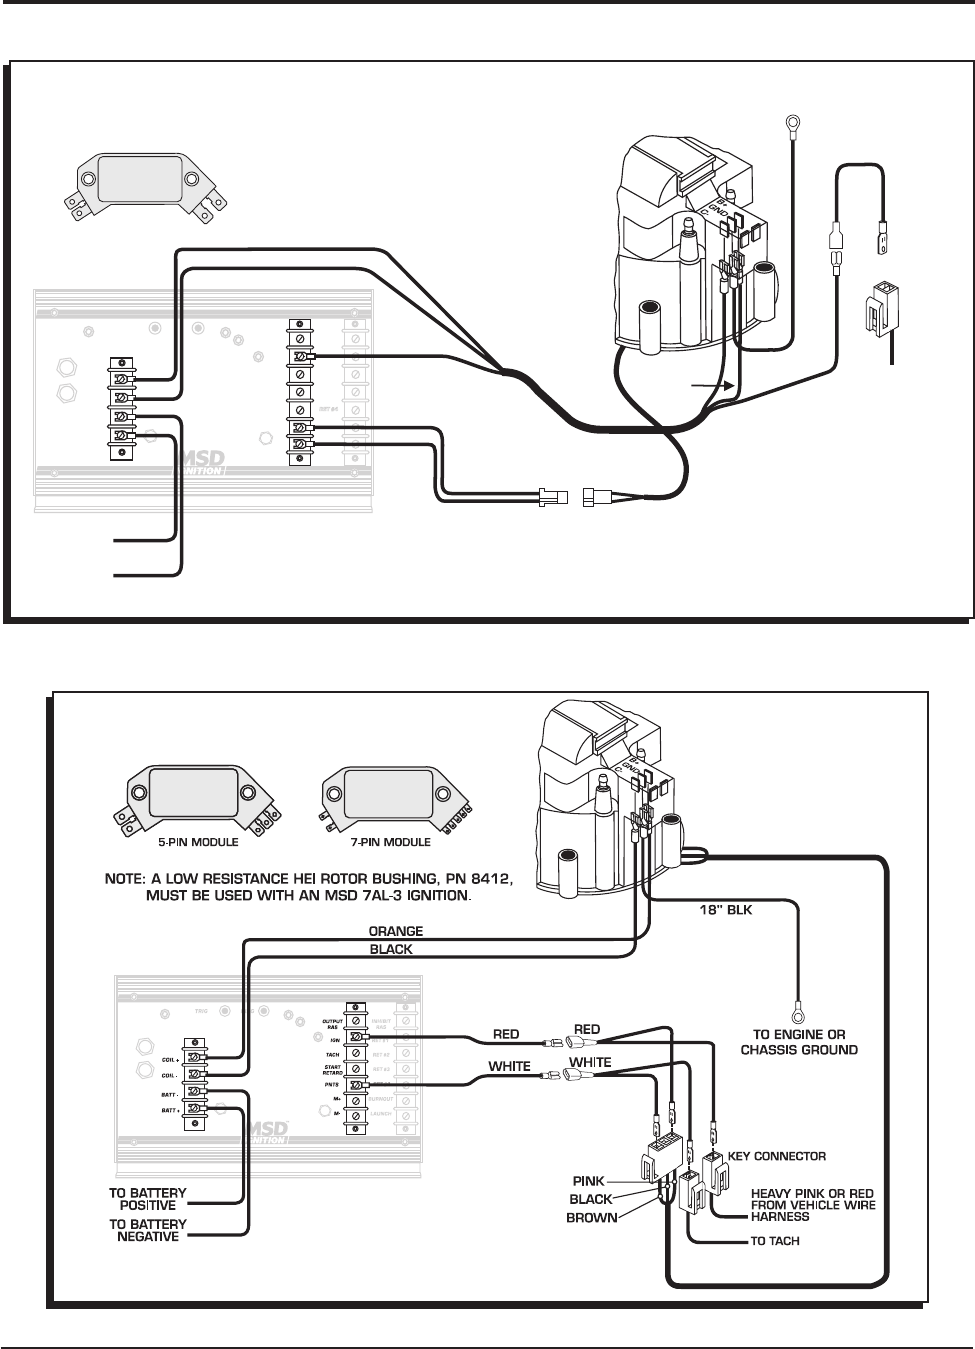 Msd 7al Wiring Diagram Ford - Wiring Diagram